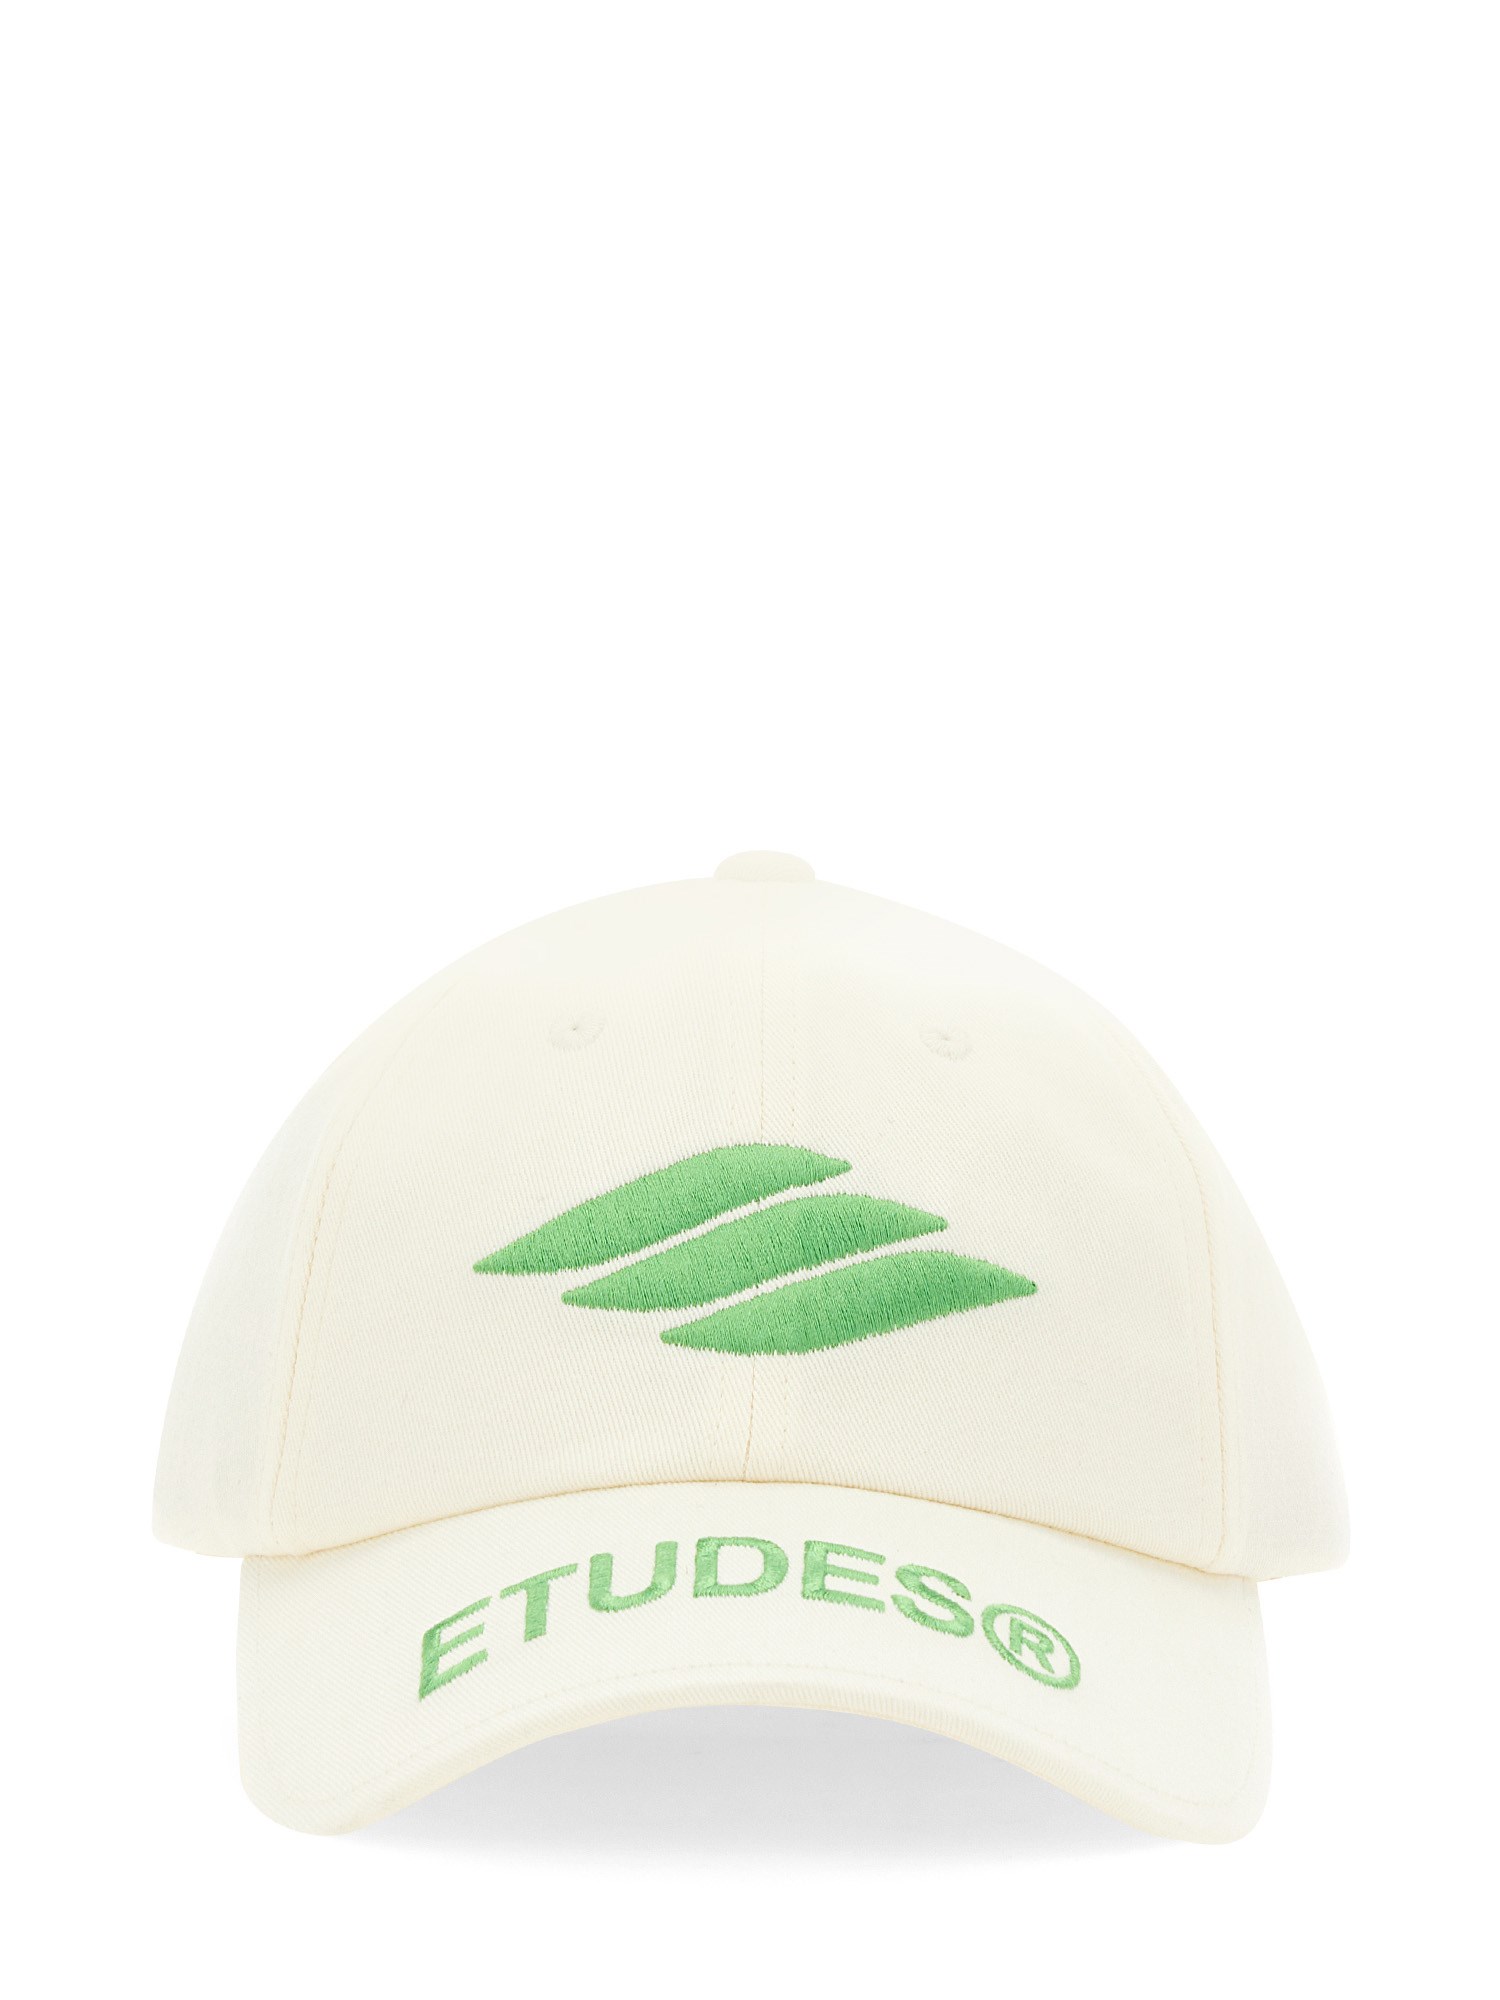 Études études baseball hat with logo embroidery